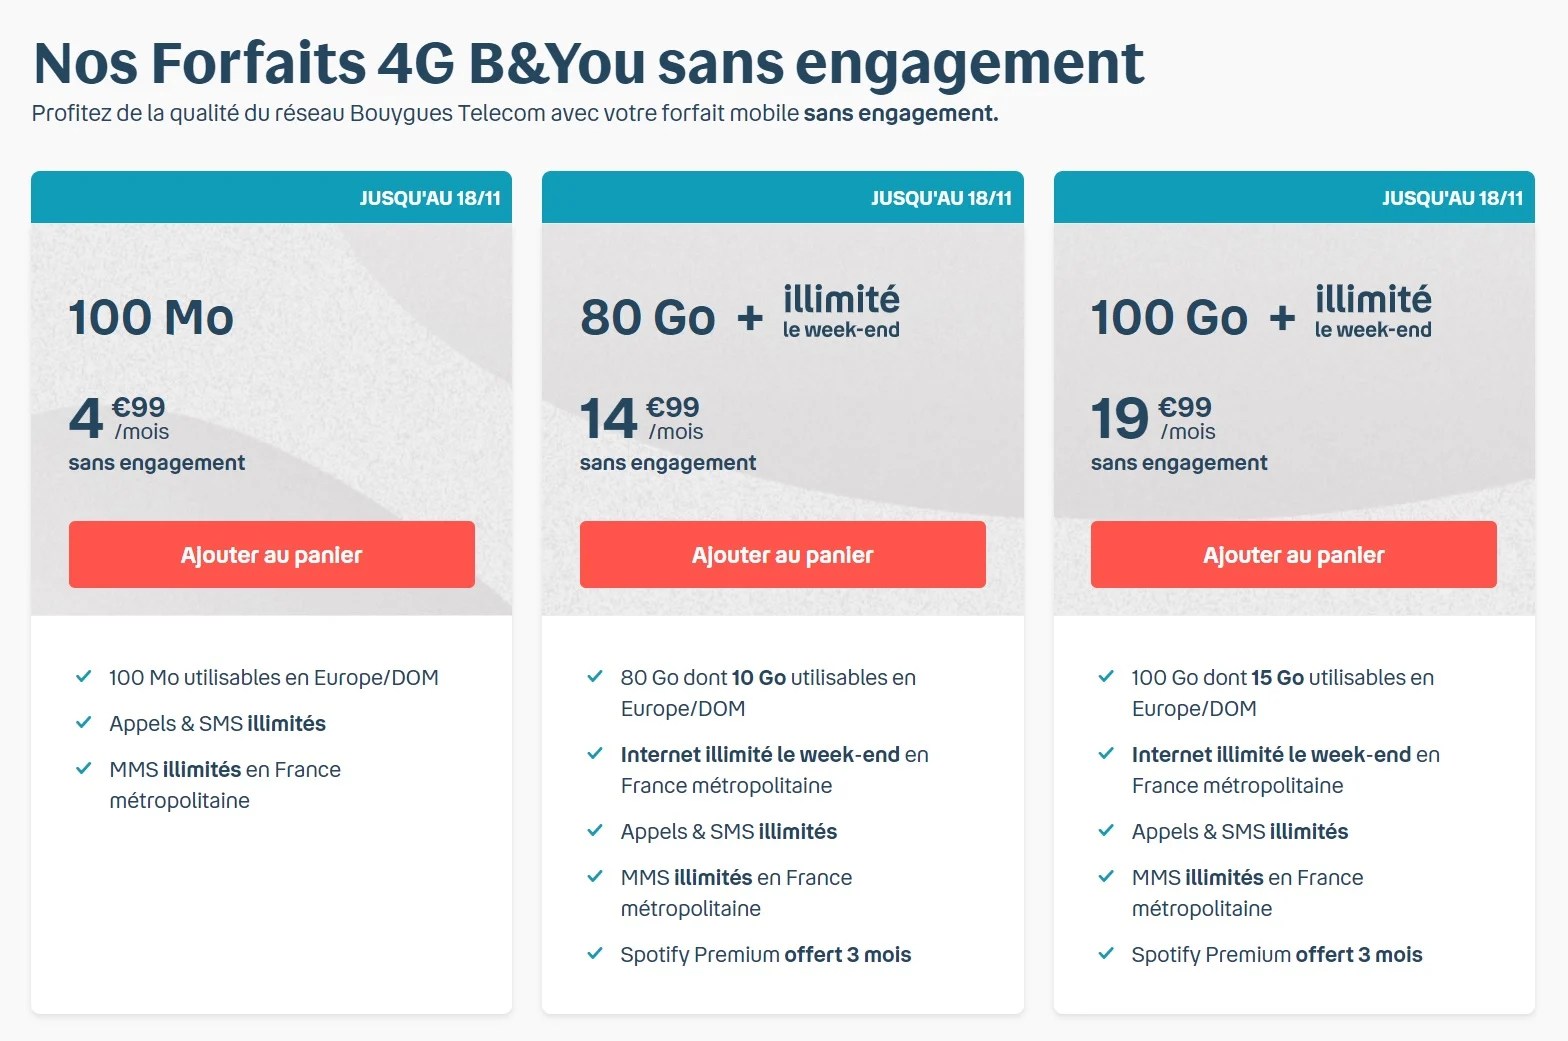 Bouygues Telecom rajoute Internet illimité le week-end à ses forfaits B&You